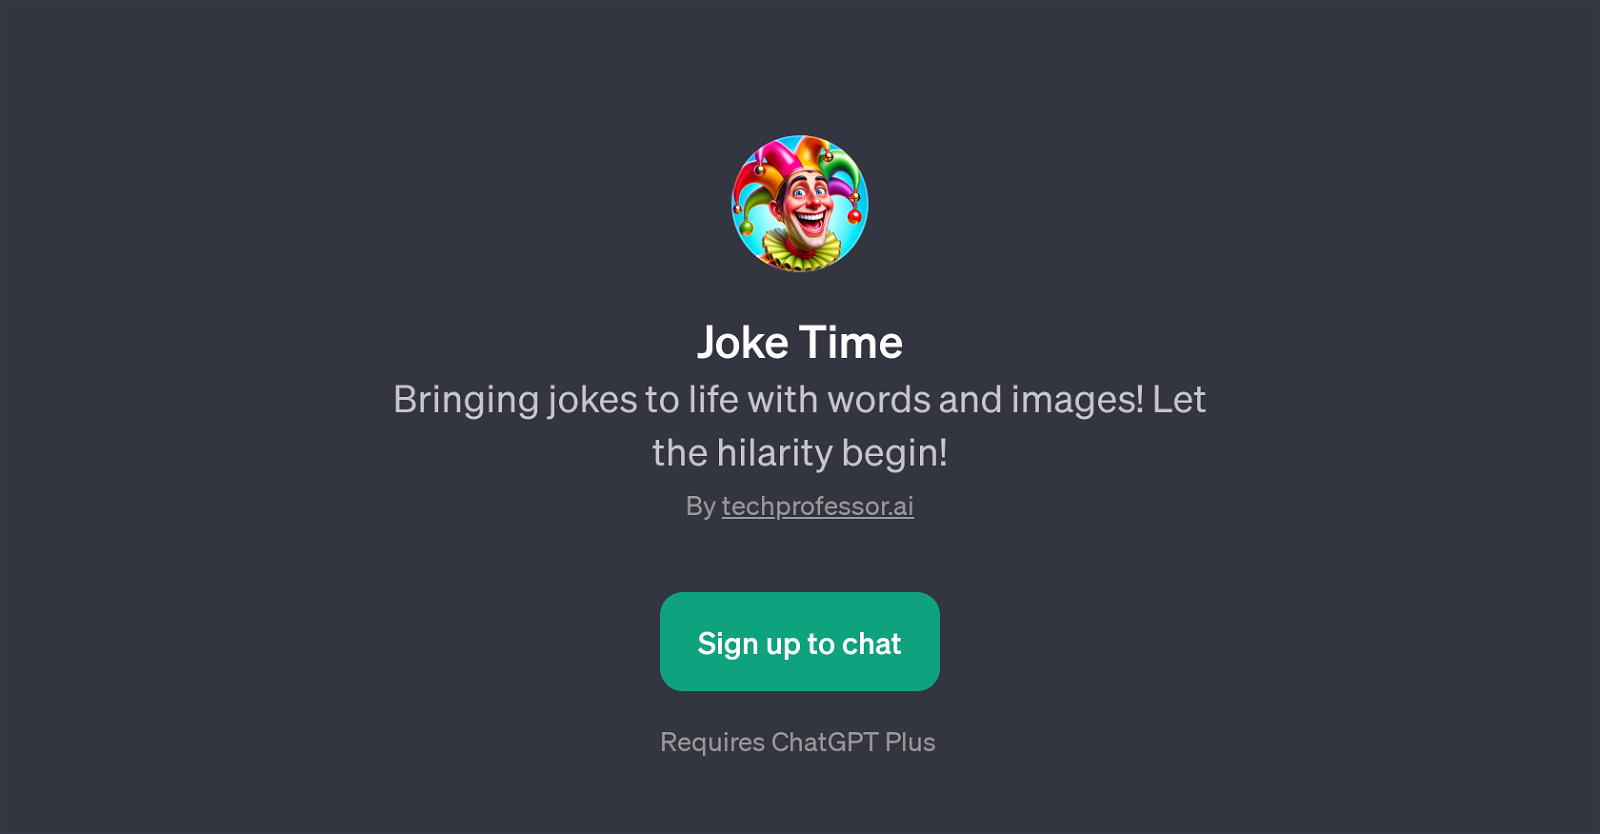 Joke Time website